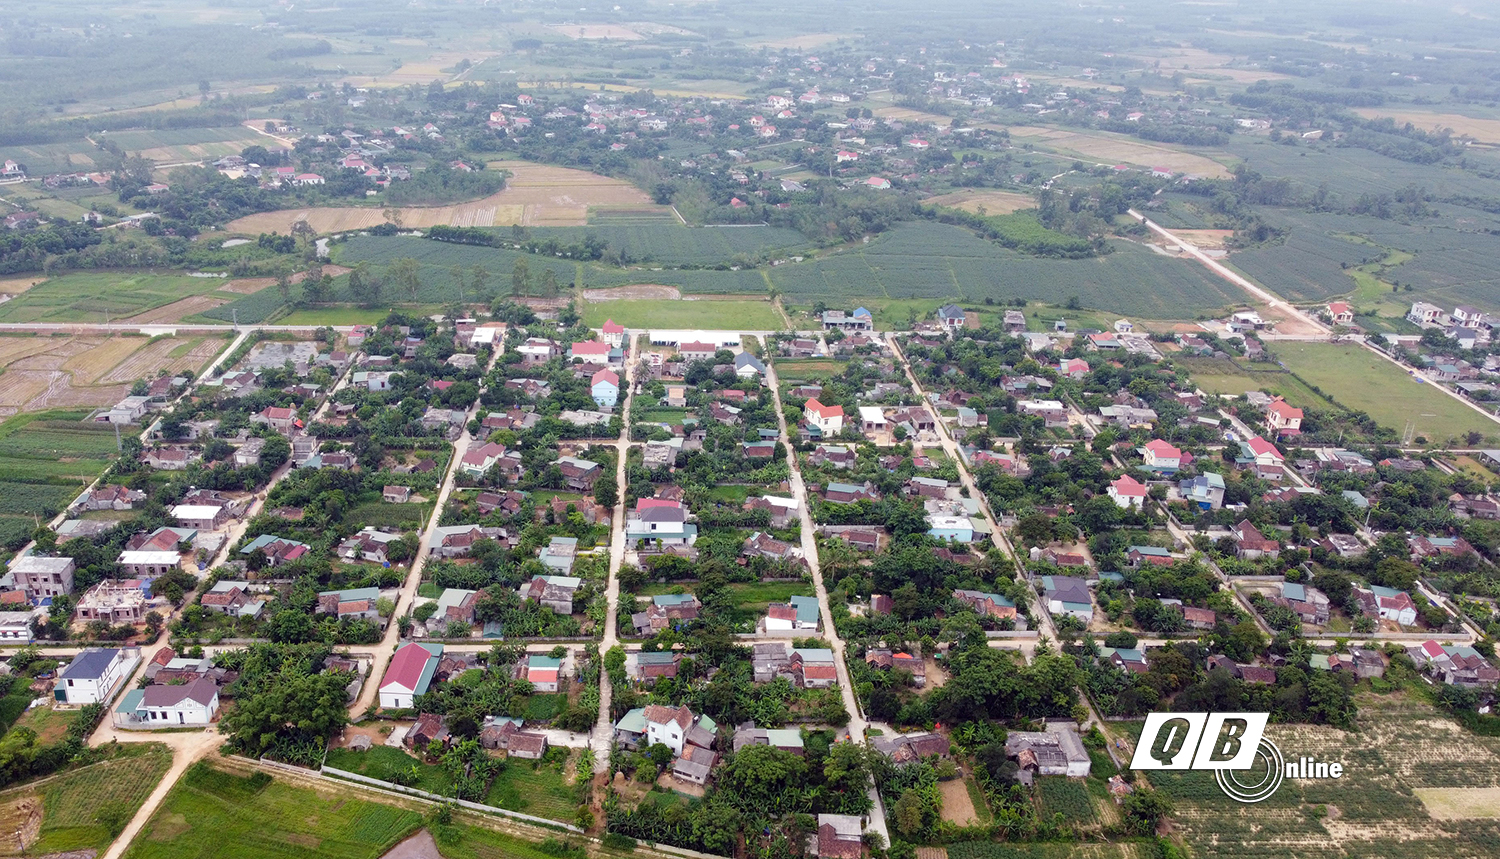 Hệ thống giao thông ở các thôn Võ Thuận 1, 2, 3 được quy hoạch rộng, thẳng, liên kết với nhau theo lối bàn cờ.